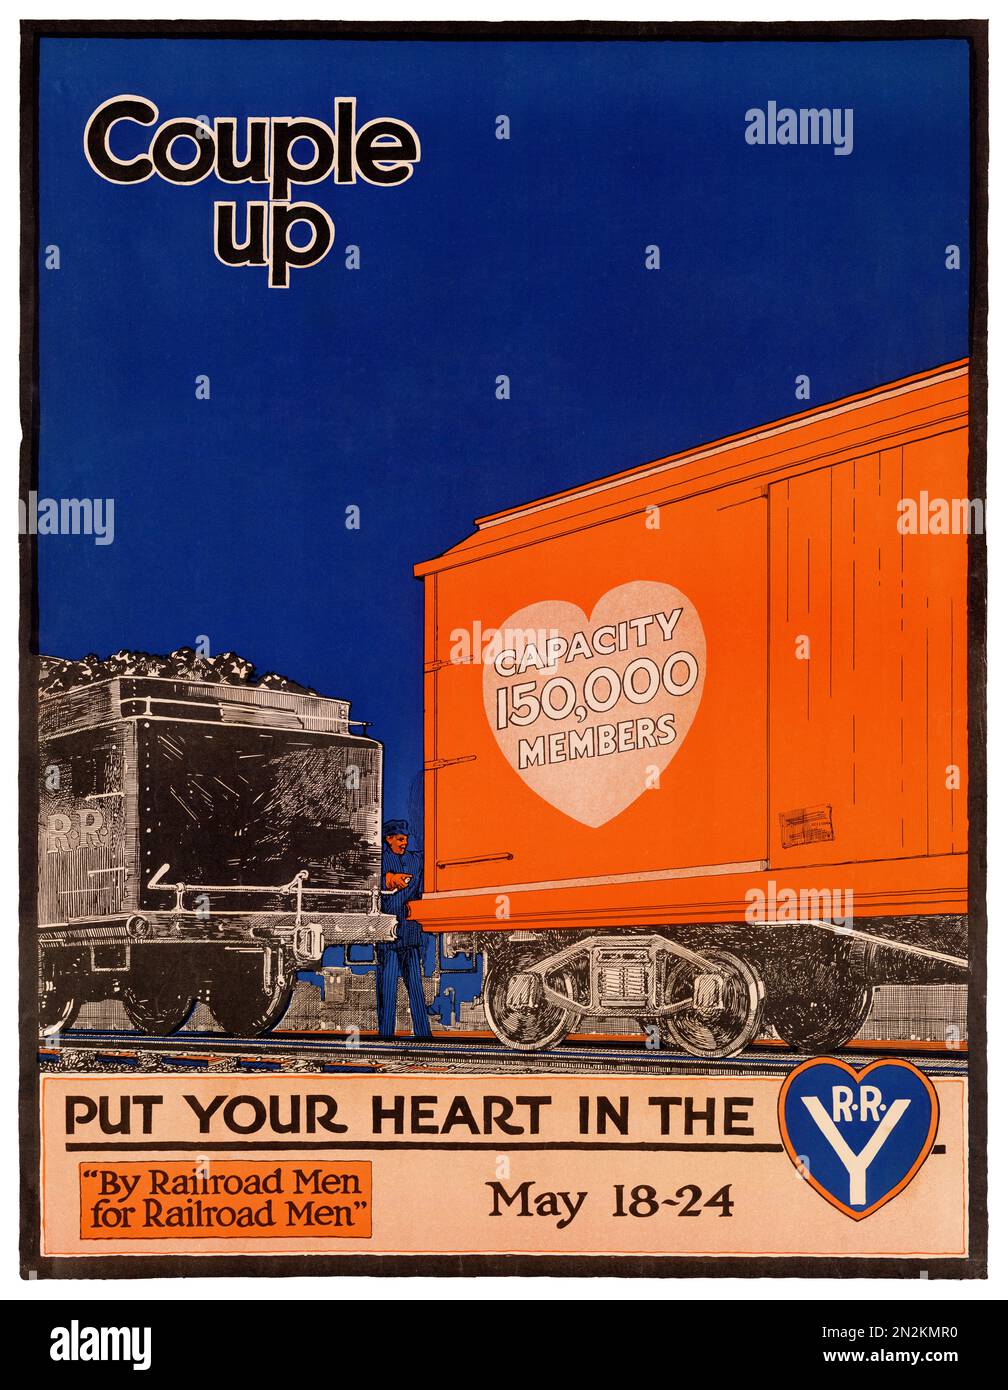 Couple mettez votre coeur dans le R.R. Y., 18-24 mai. Par J. F. Butler (dates inconnues). Affiche publiée en 1910 aux États-Unis. Banque D'Images